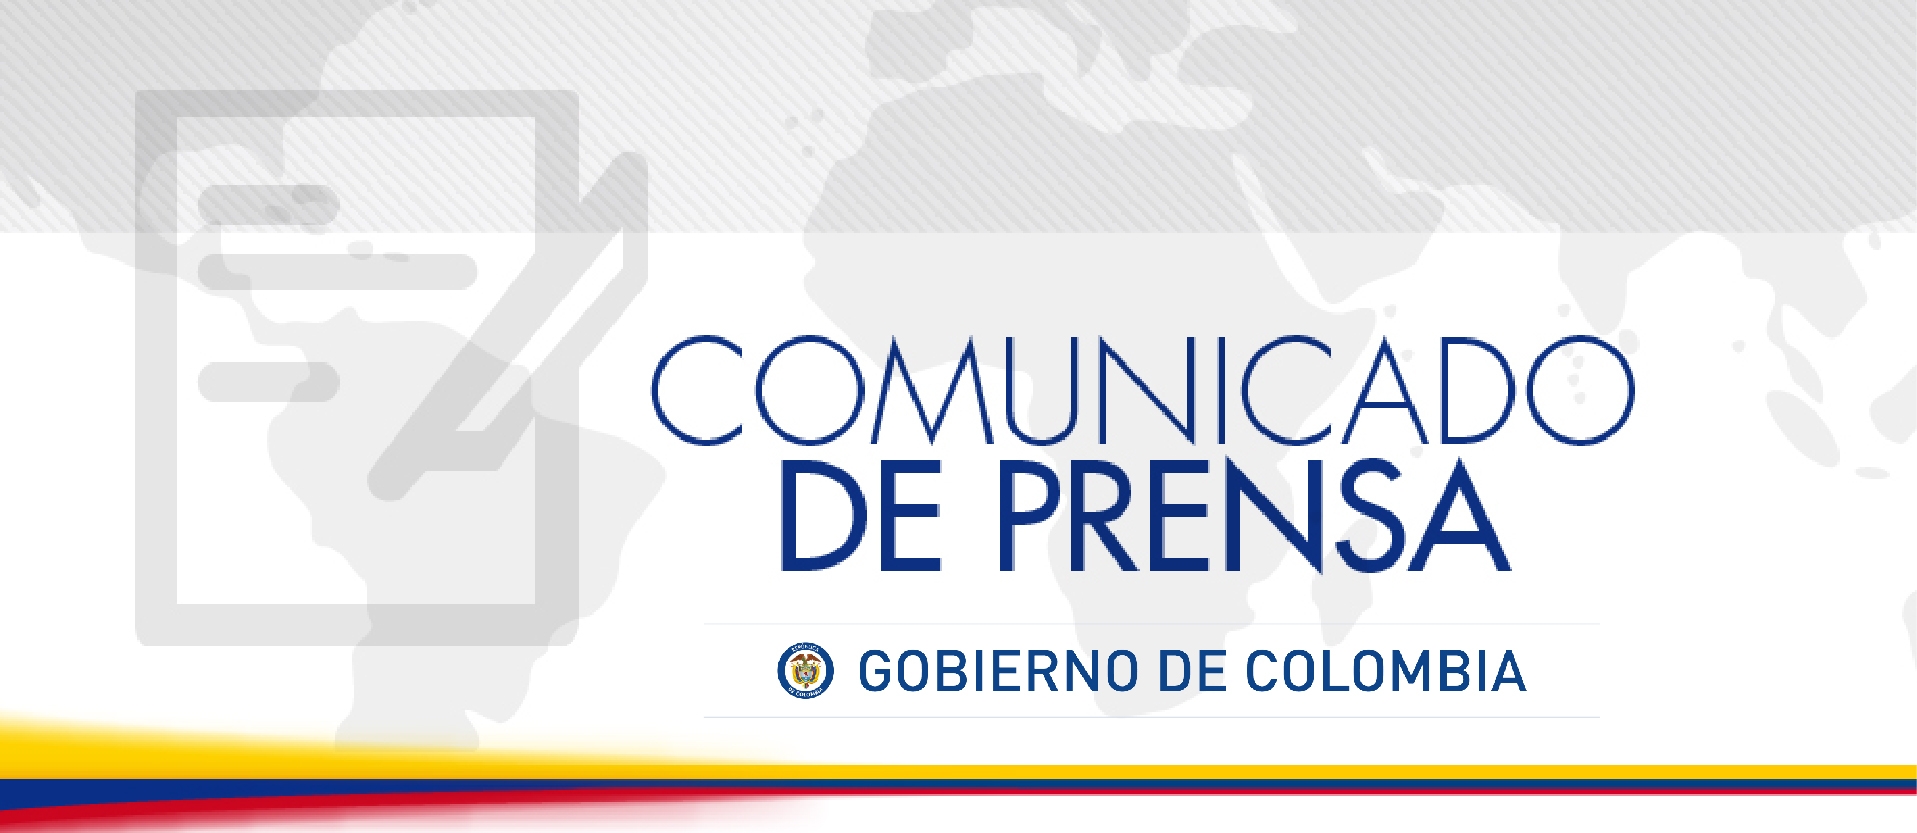 El Ministerio de Relaciones Exteriores, en nombre del Gobierno de Colombia informa que: